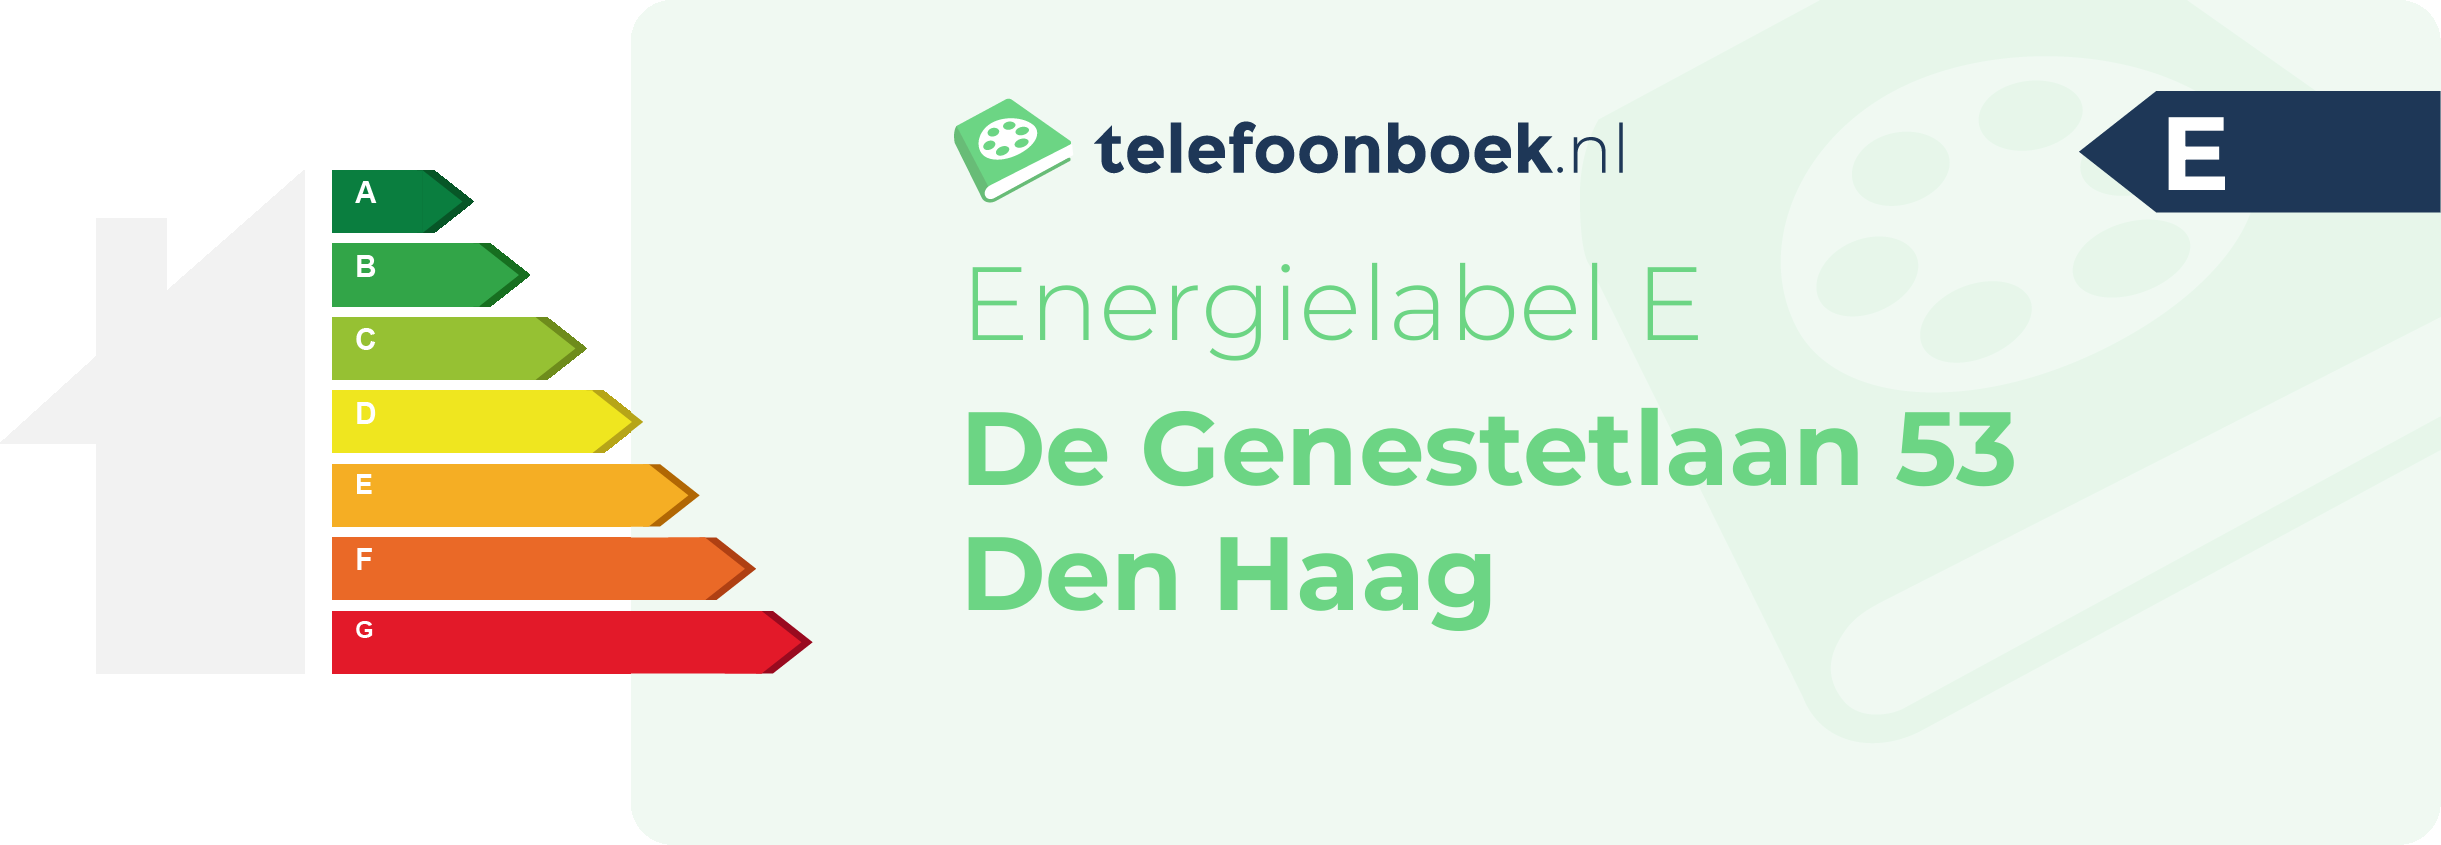 Energielabel De Genestetlaan 53 Den Haag